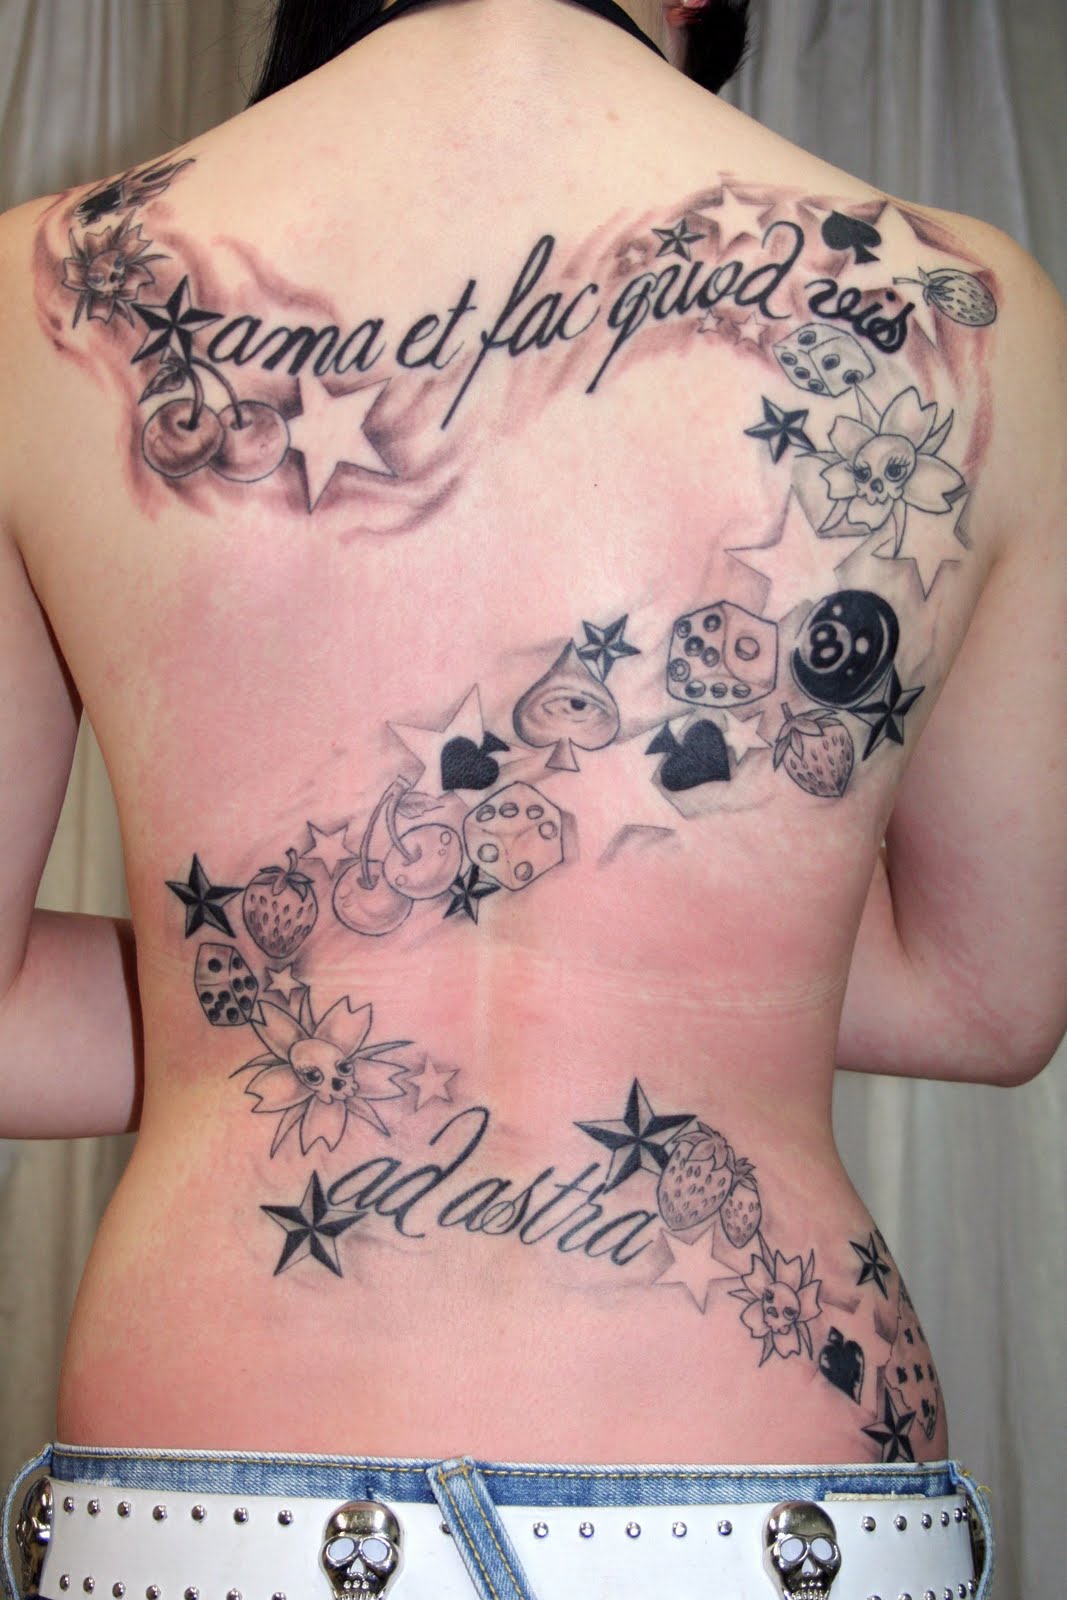 http://4.bp.blogspot.com/-mVRamao9tK0/Te0QtD7c2DI/AAAAAAAAAcY/LCFYmWQbwaU/s1600/Beautiful-Back-Tattoo-Design-For-Female.jpg